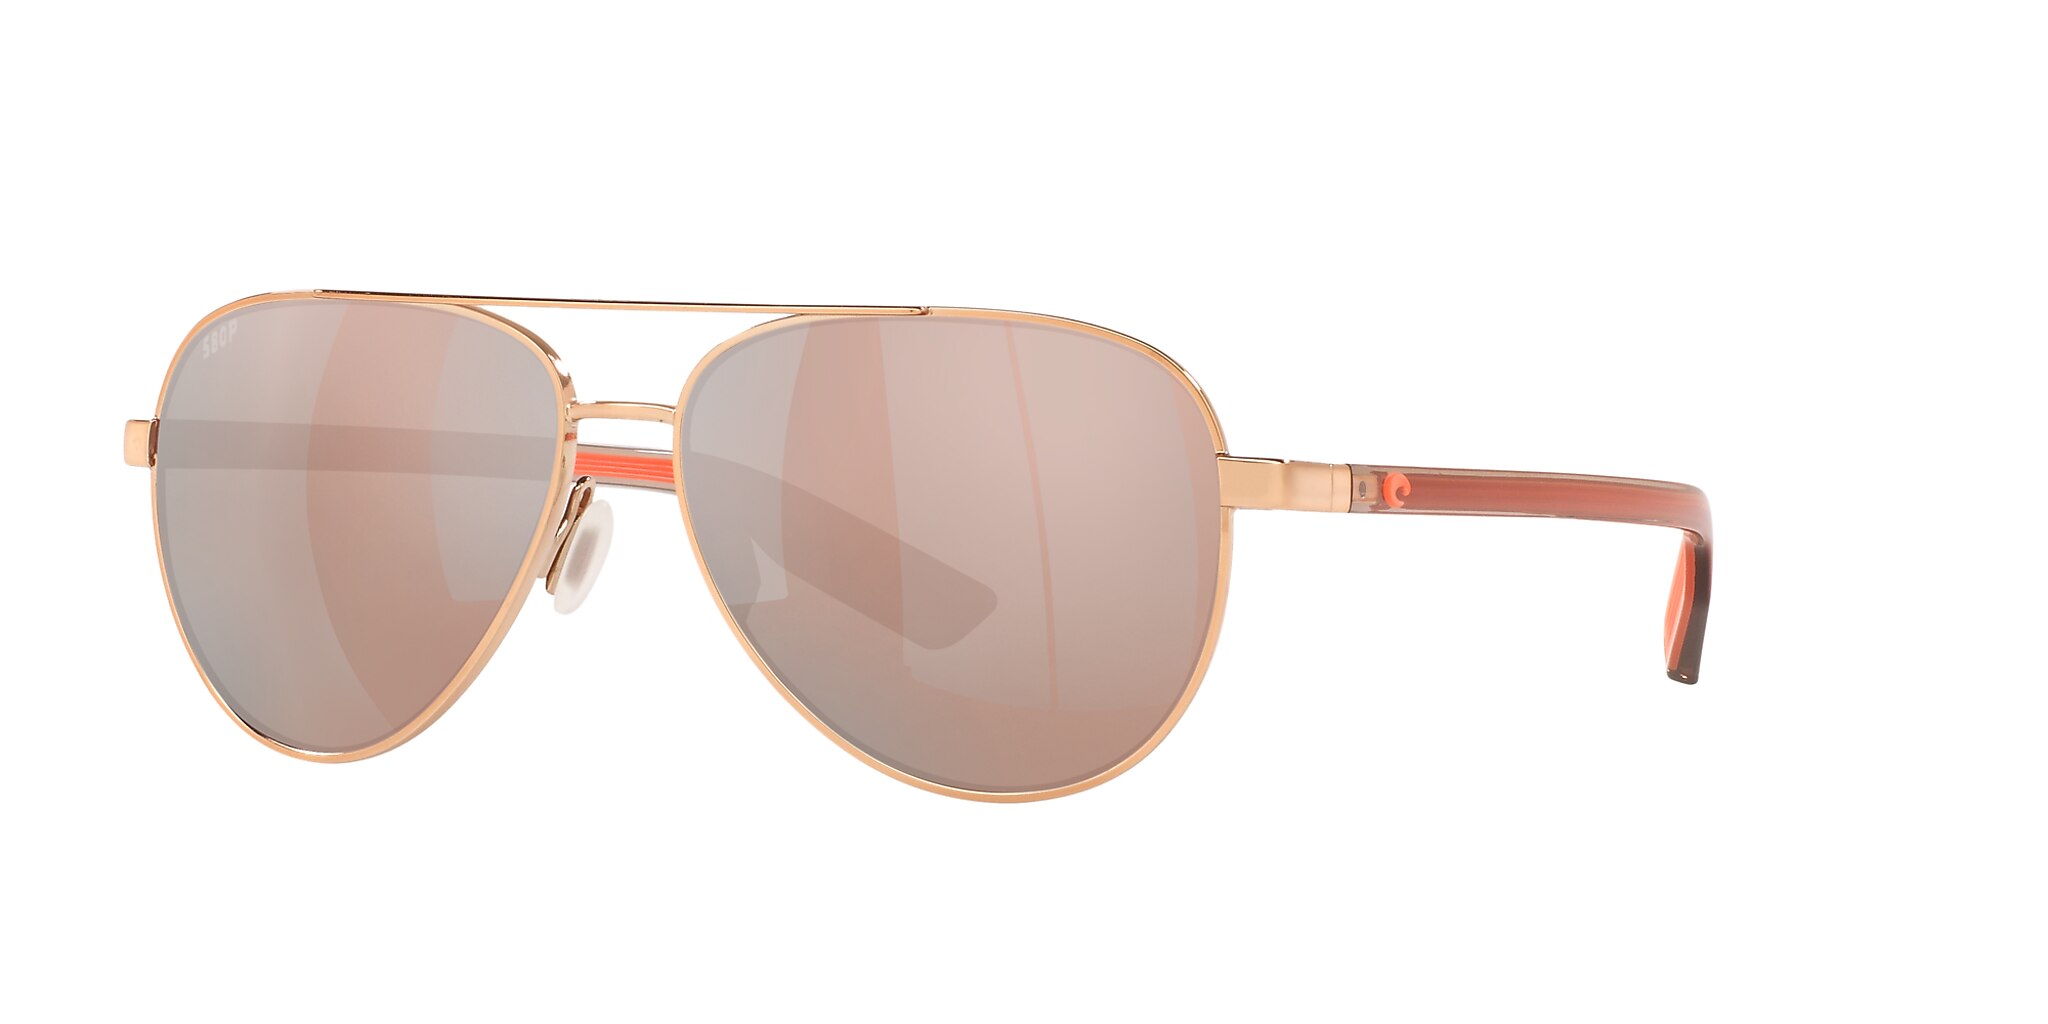 Peli Polarized Sunglasses in Copper Silver Mirror | Costa Del Mar®